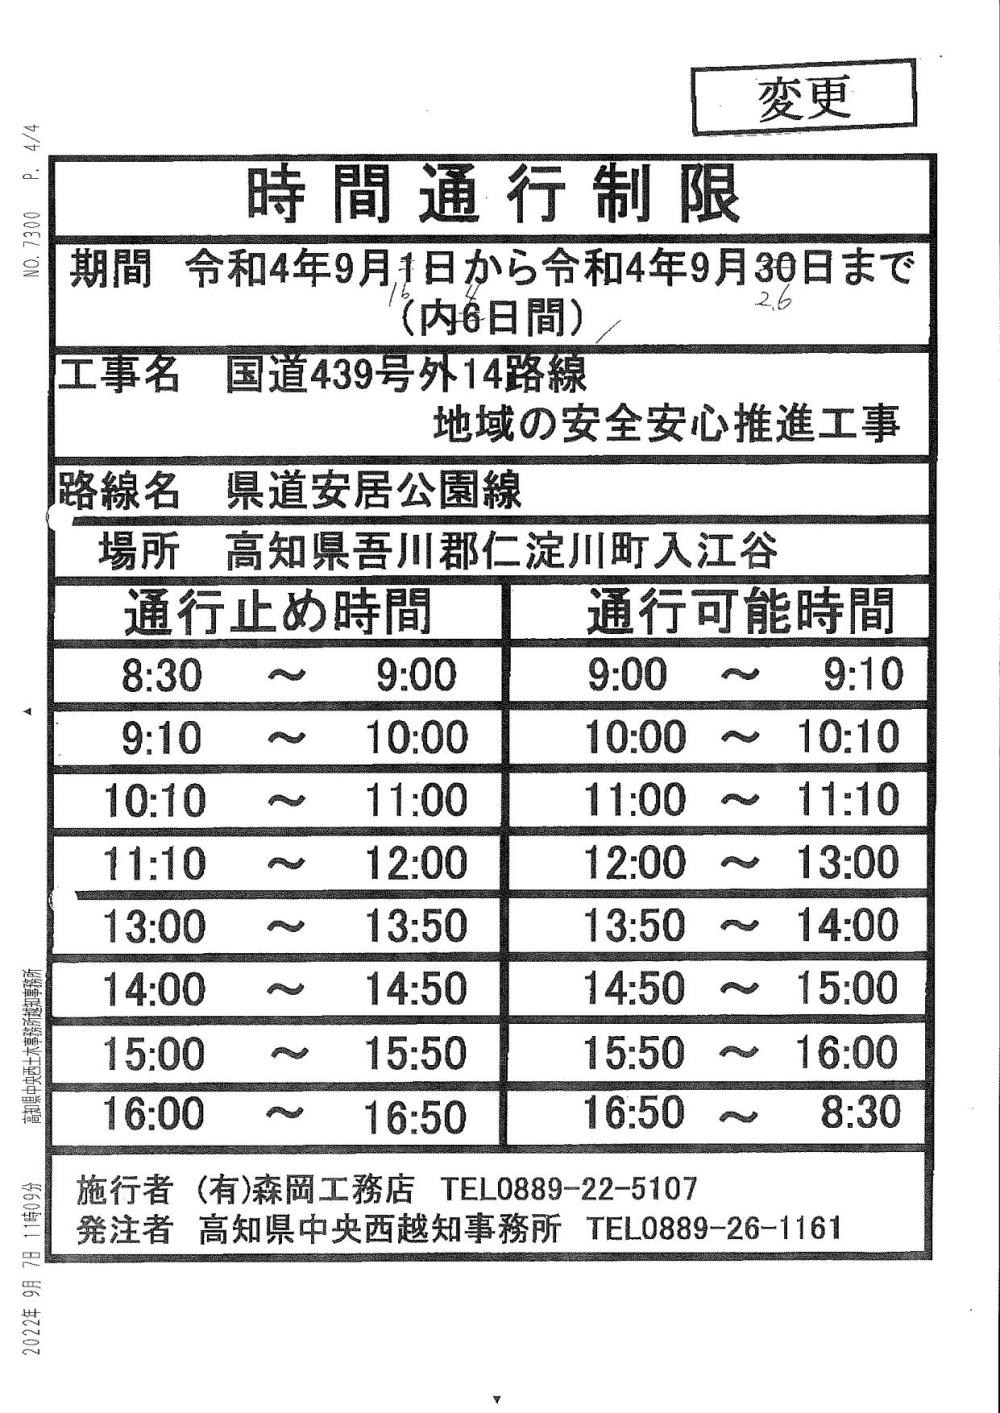 県道362号・安居公園線にて時間通行制限のお知らせ（R4.7/26～R5.1/12）